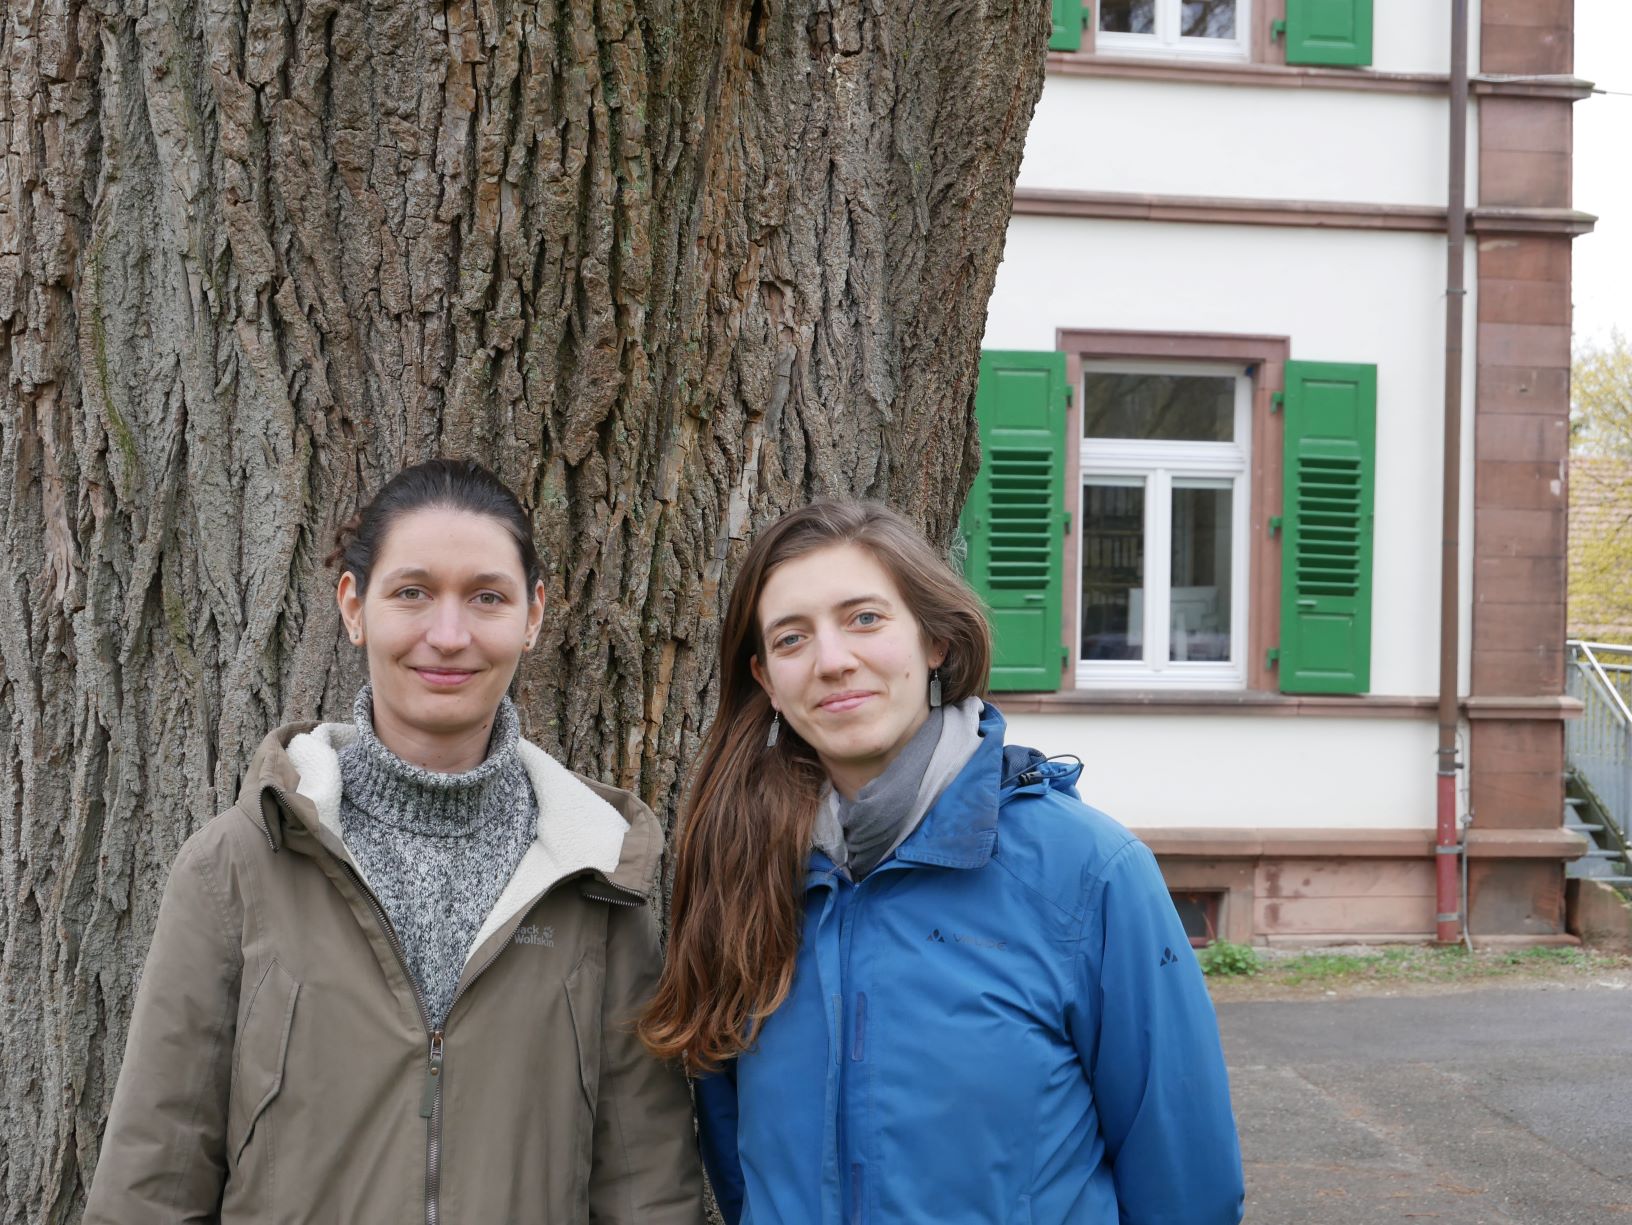 Projektkoordinatorin Marielle Rüppel(re) und Werkstudentin Julie Weisser(li)